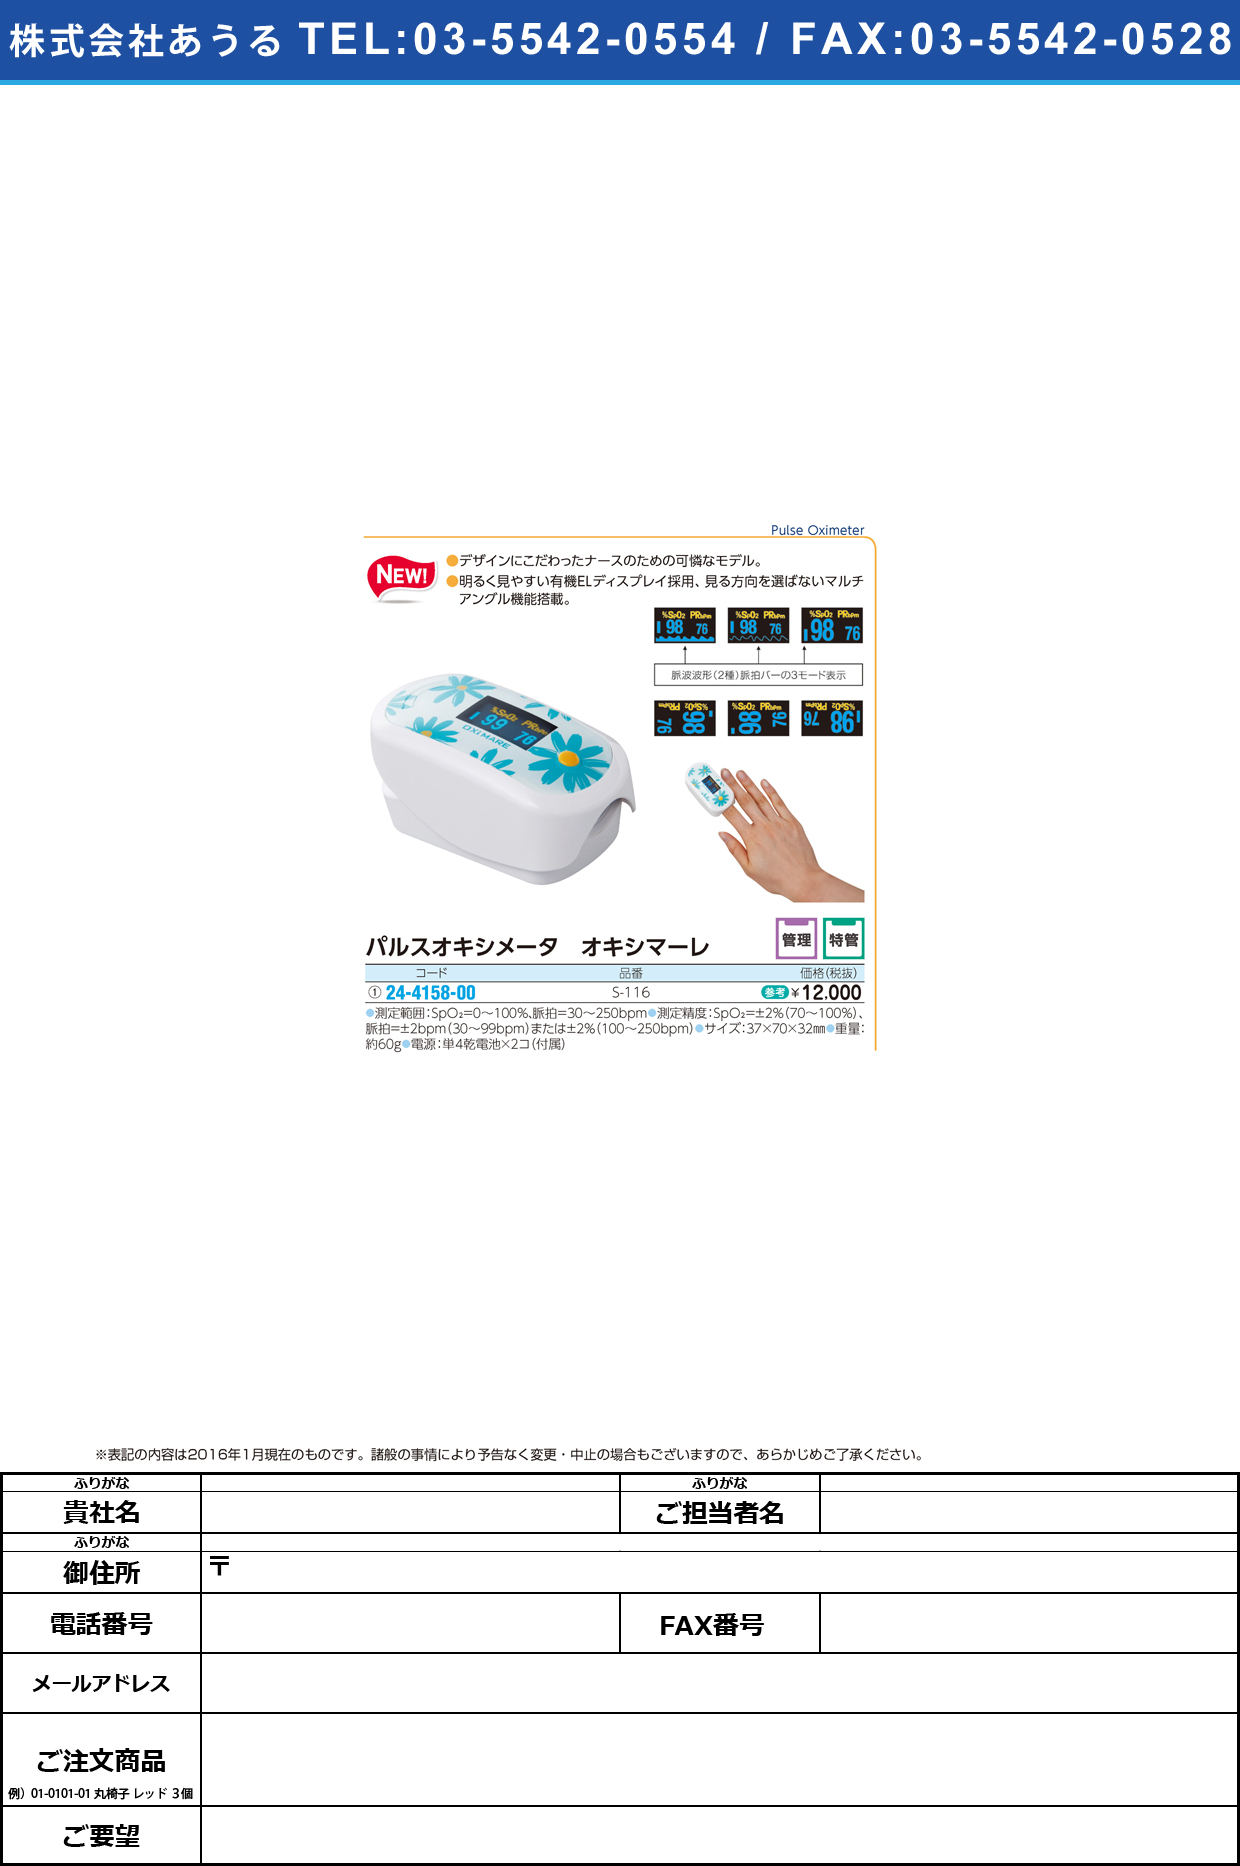 (24-4158-00)パルスオキシメータ オキシマーレ ﾊﾟﾙｽｵｷｼﾒｰﾀｵｷｼﾏｰﾚ S-116【1台単位】【2016年カタログ商品】